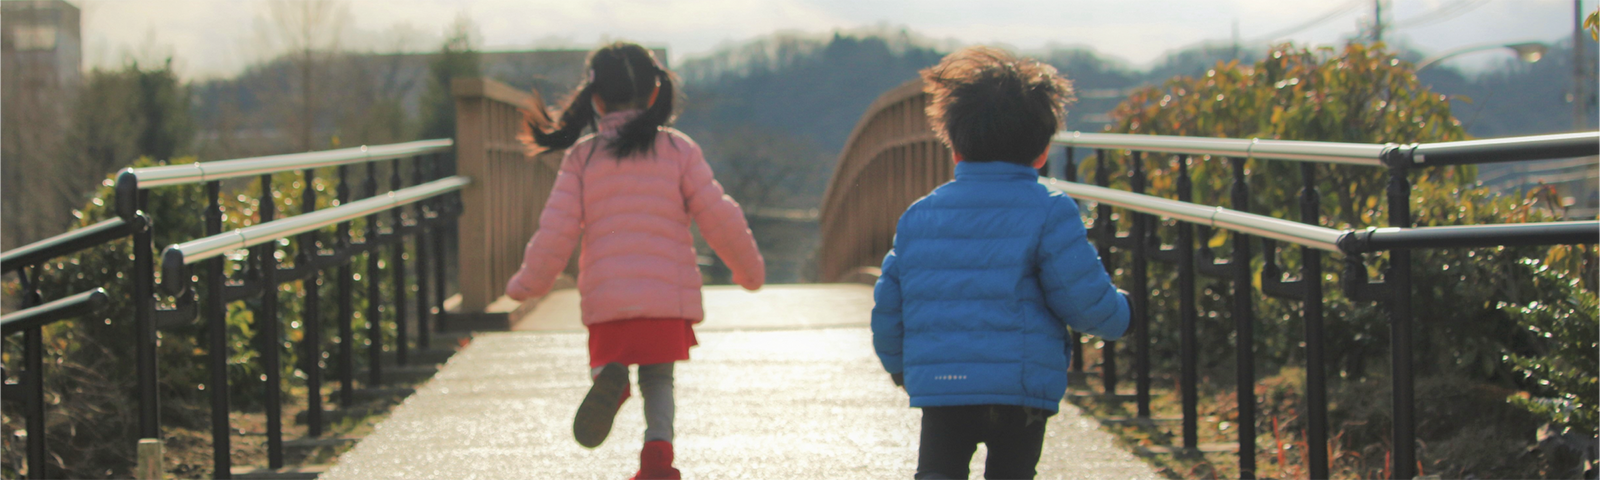 子どもが橋の上を走っている写真